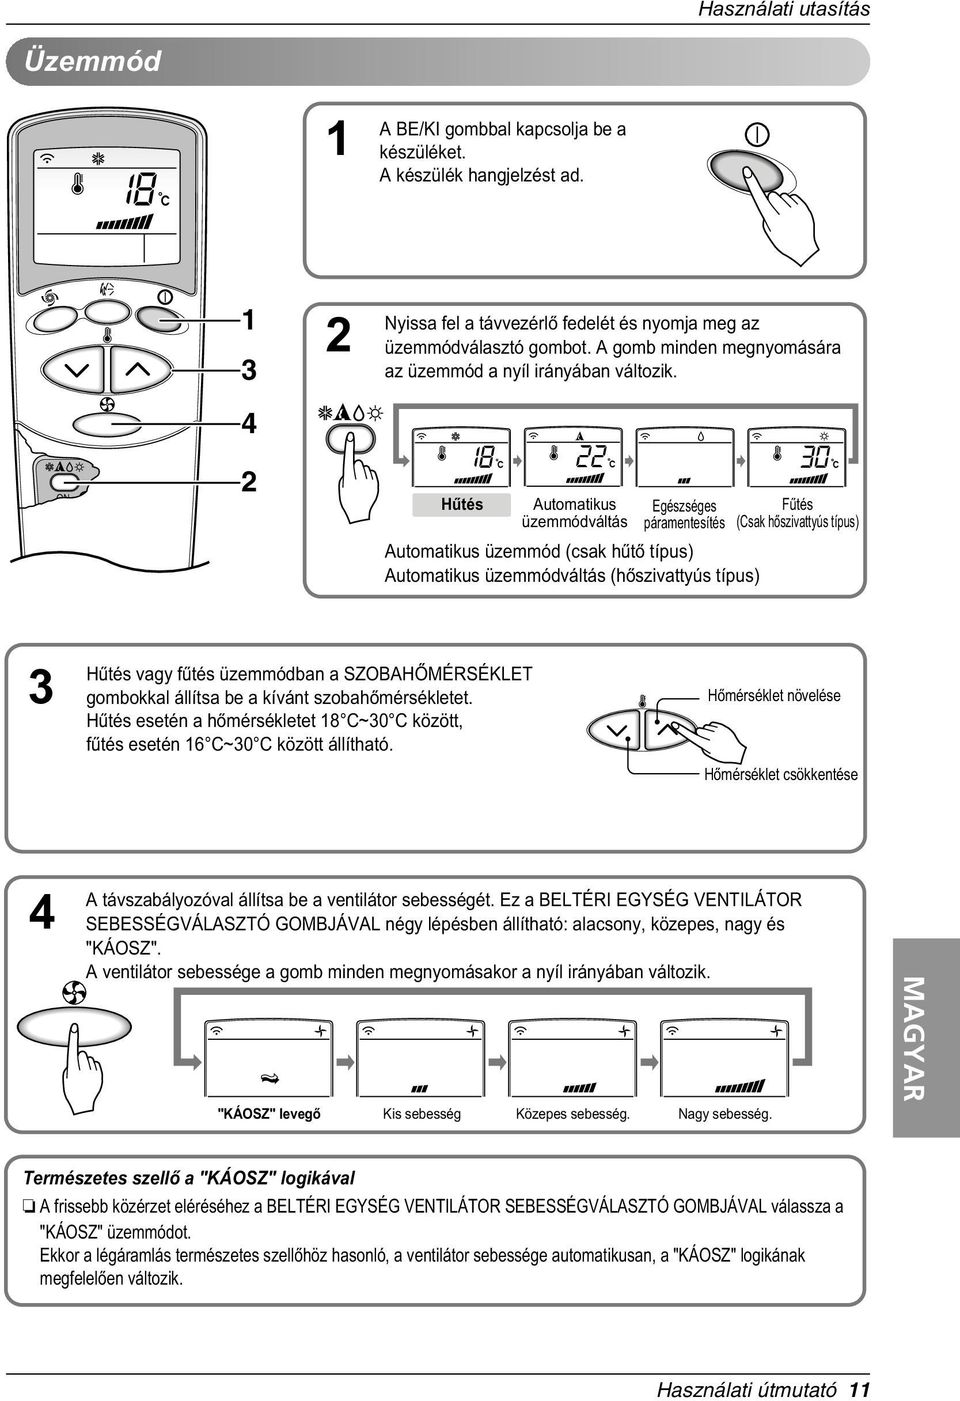 LG Szobai légkondicionáló HASZNÁLATI ÚTMUTATÓ - PDF Ingyenes letöltés